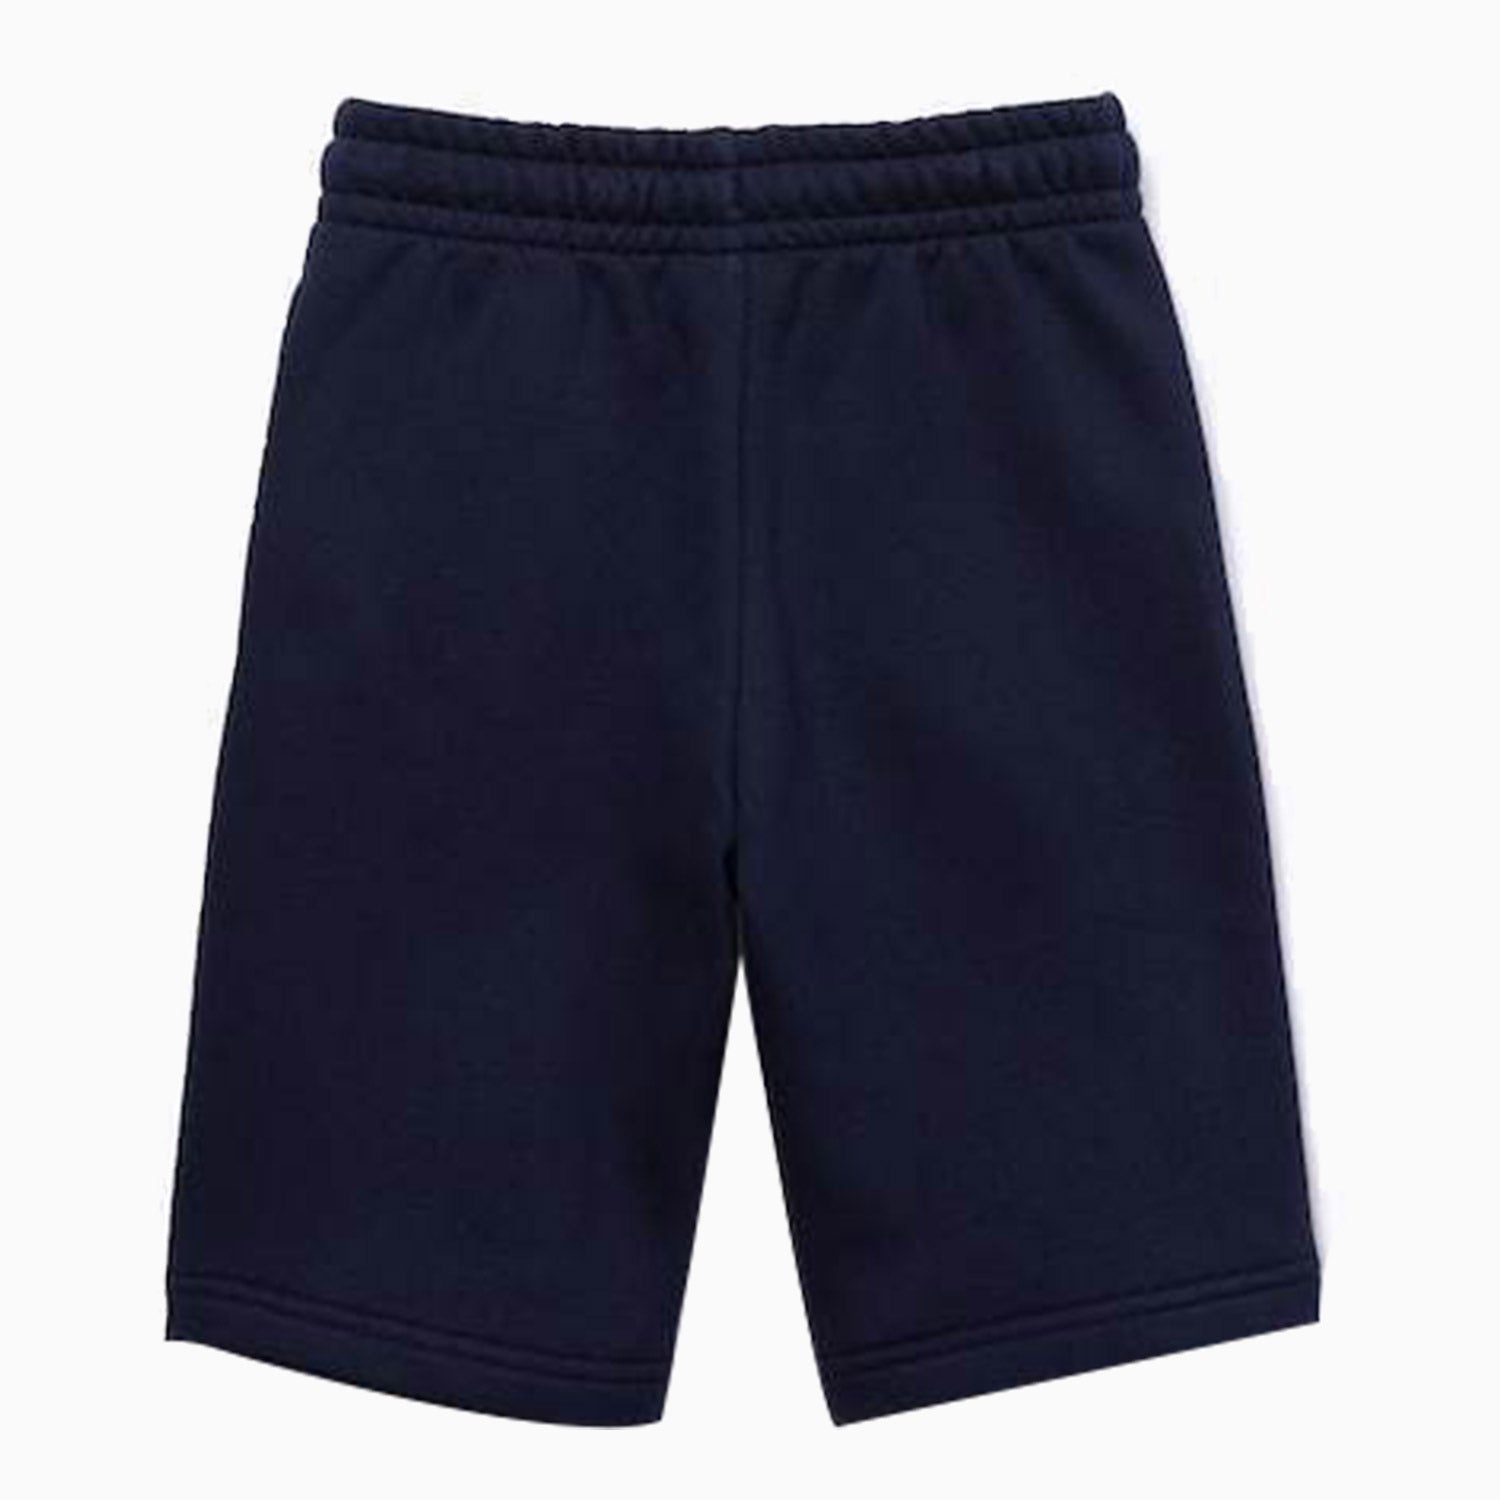 LACOSTE | Boy's Sport Fleece Short - Color: Navy Blue - Kids Premium Clothing -